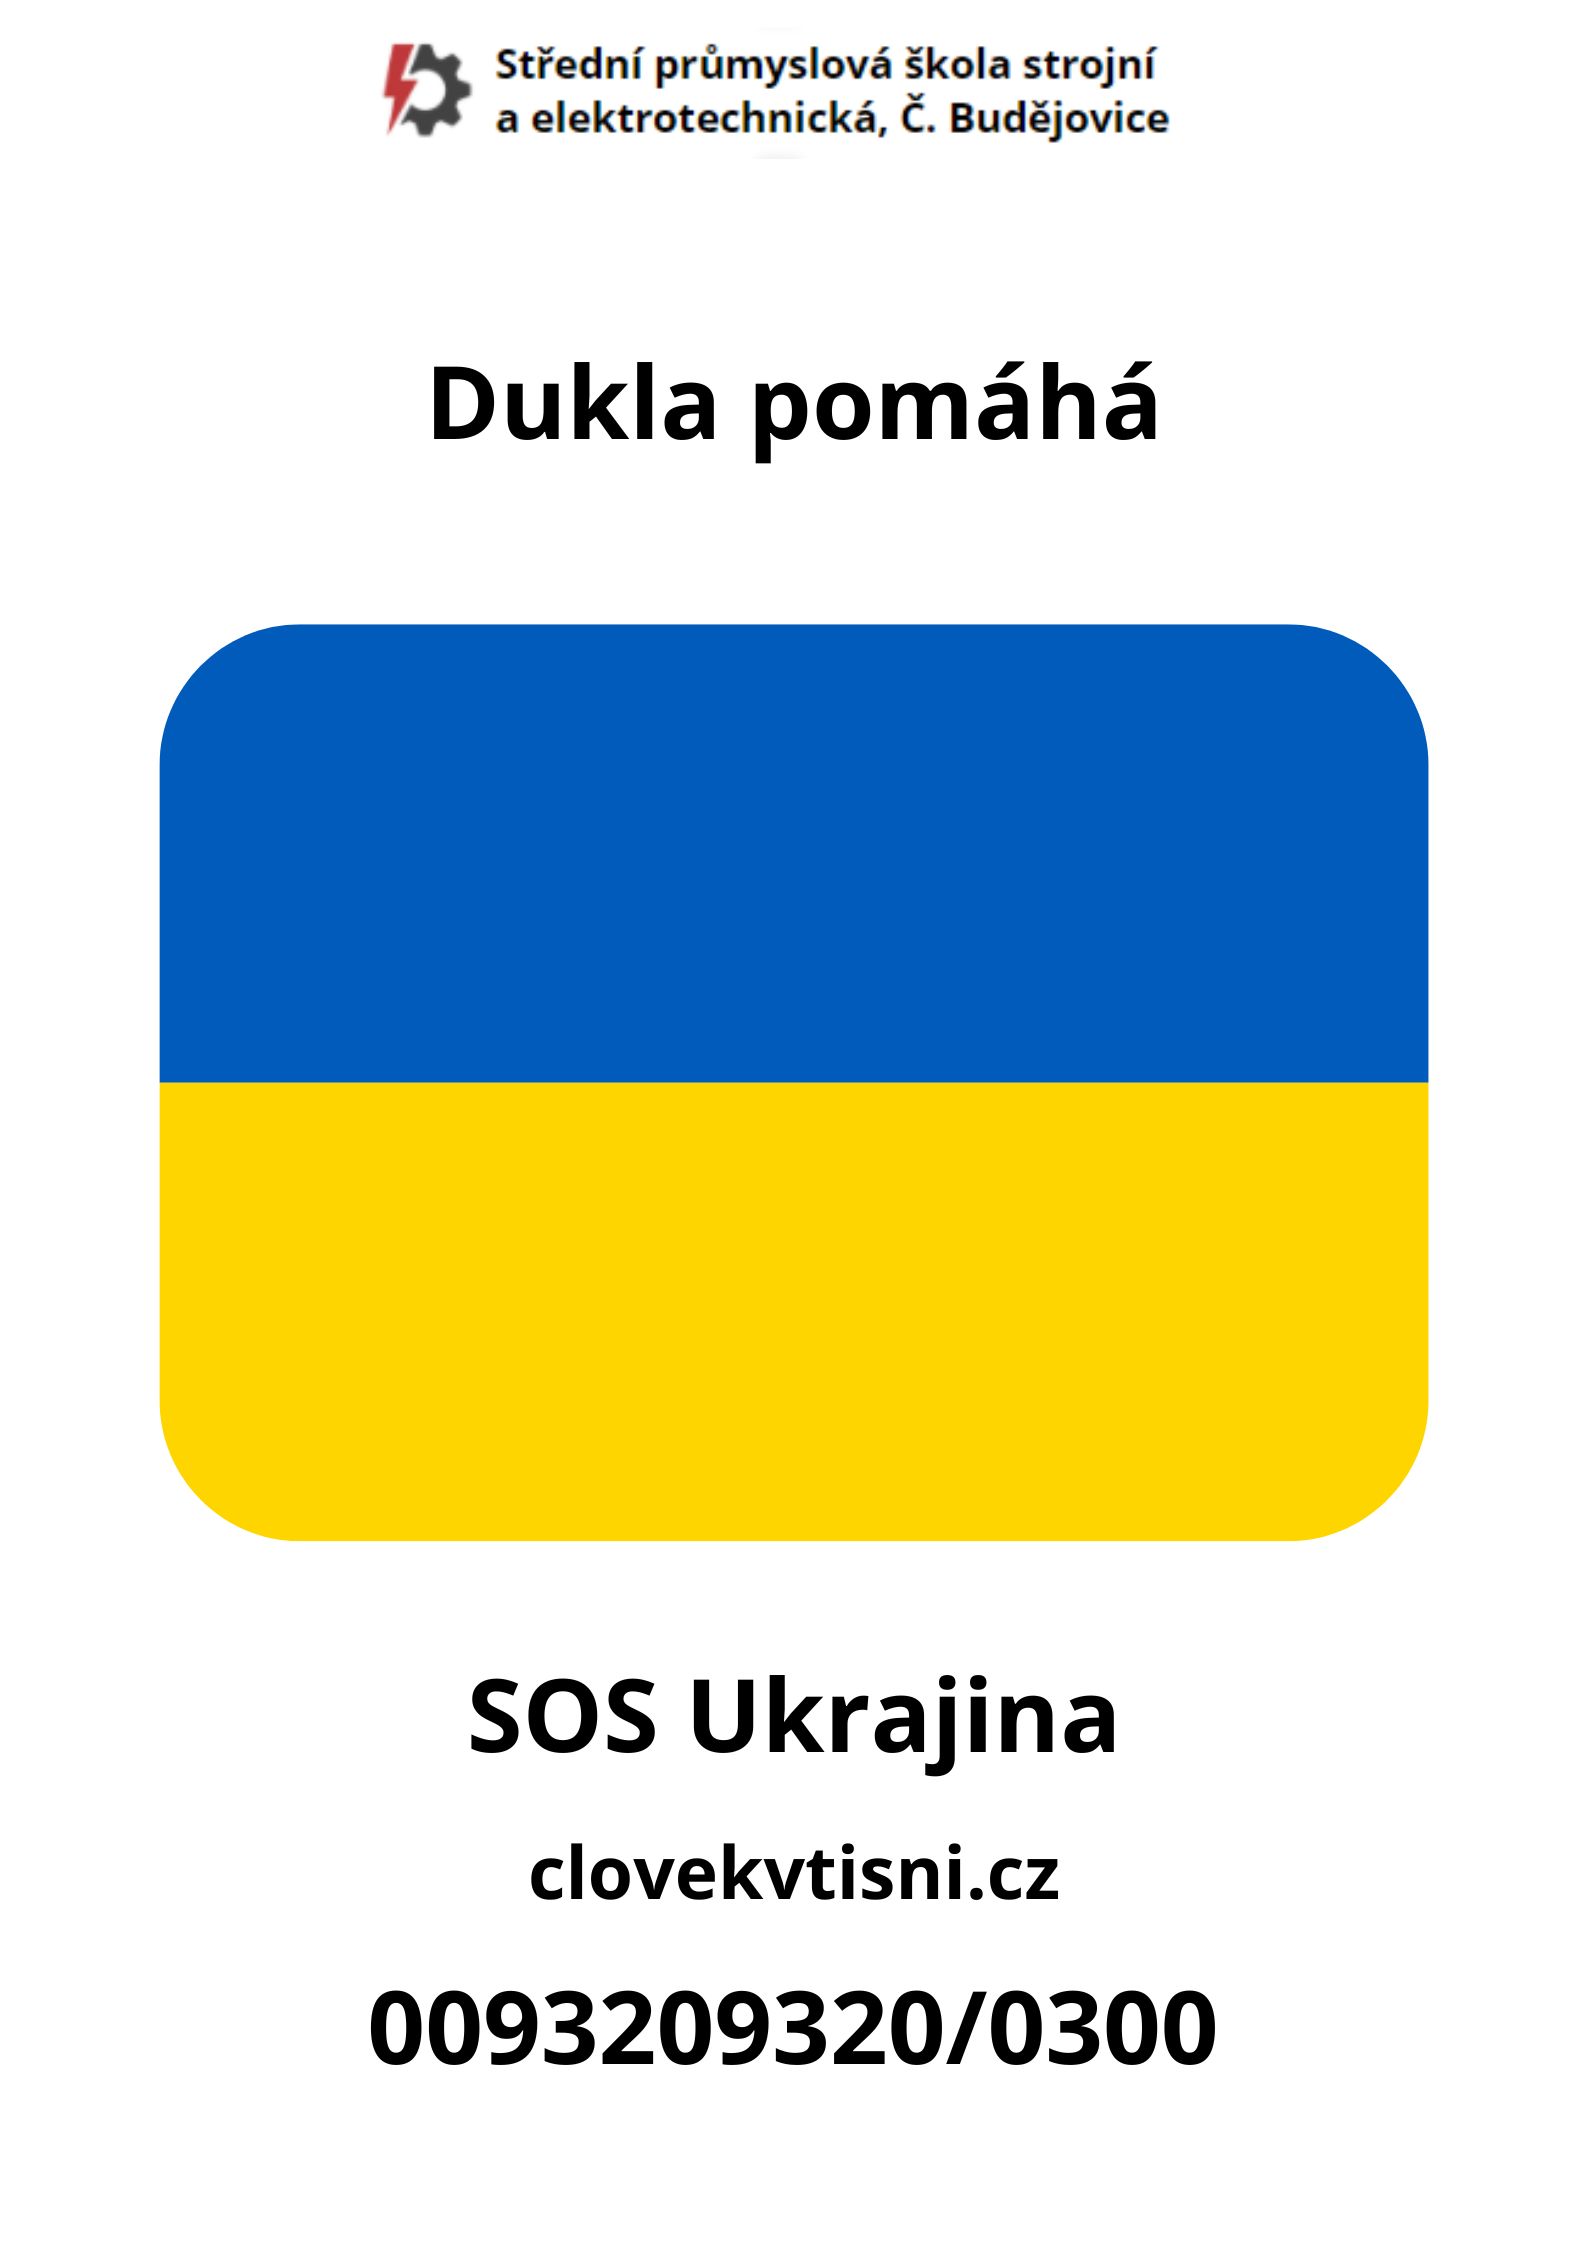 672c4057bef68f2d2e1c53ae7dbacbd9291d9fe2 - Dukla pomáhá a podporuje sbírku SOS Ukrajina